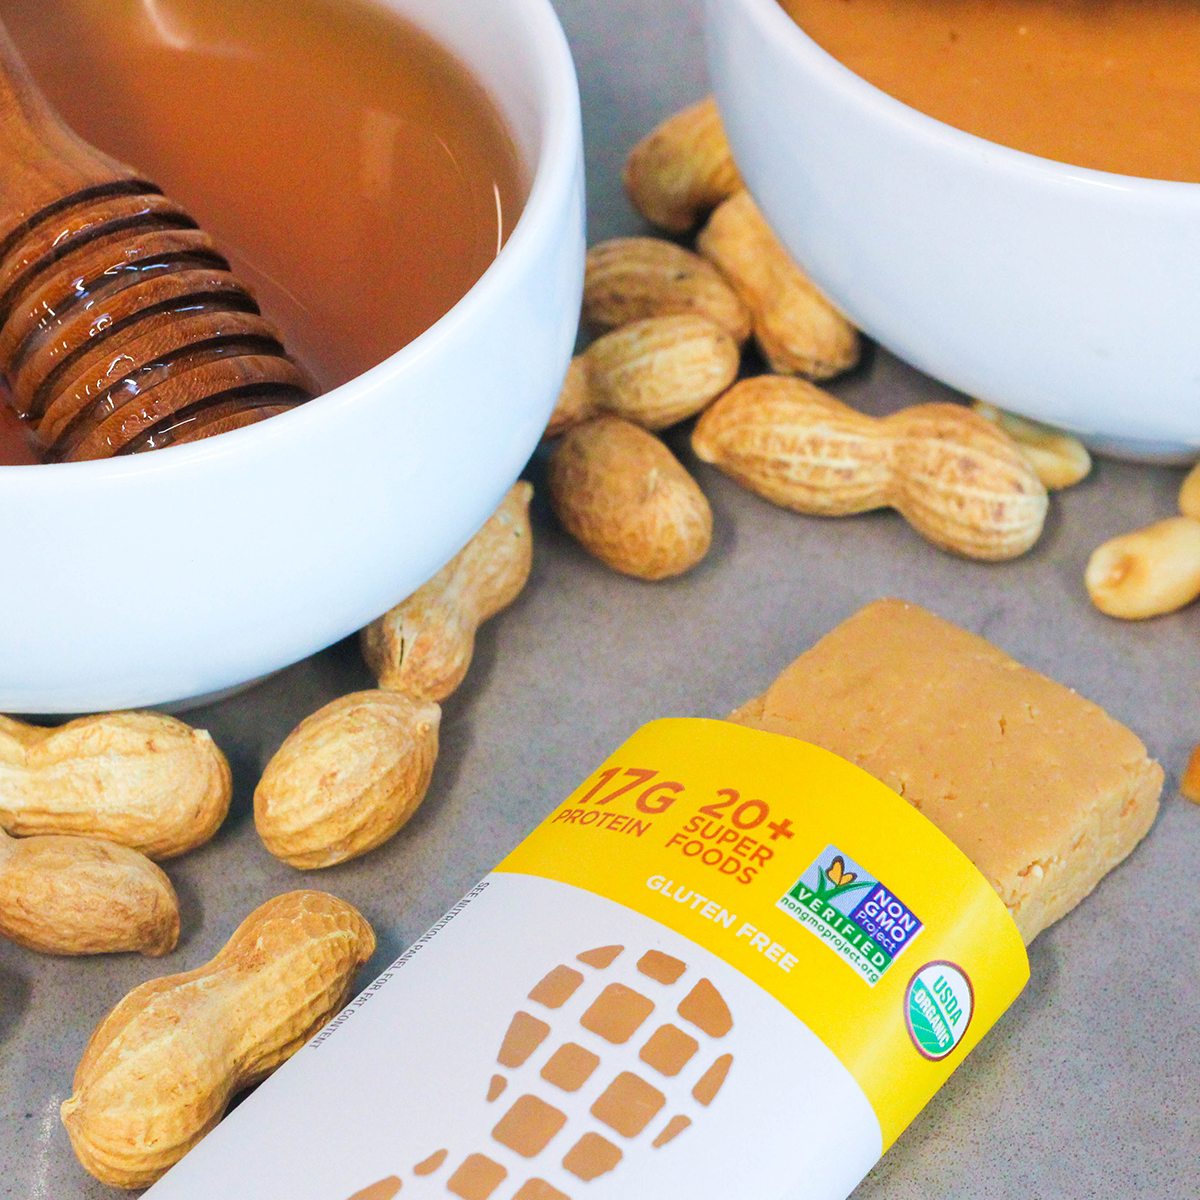 Peanut Butter Protein Bar Organic, Non-GMO, Gluten Free